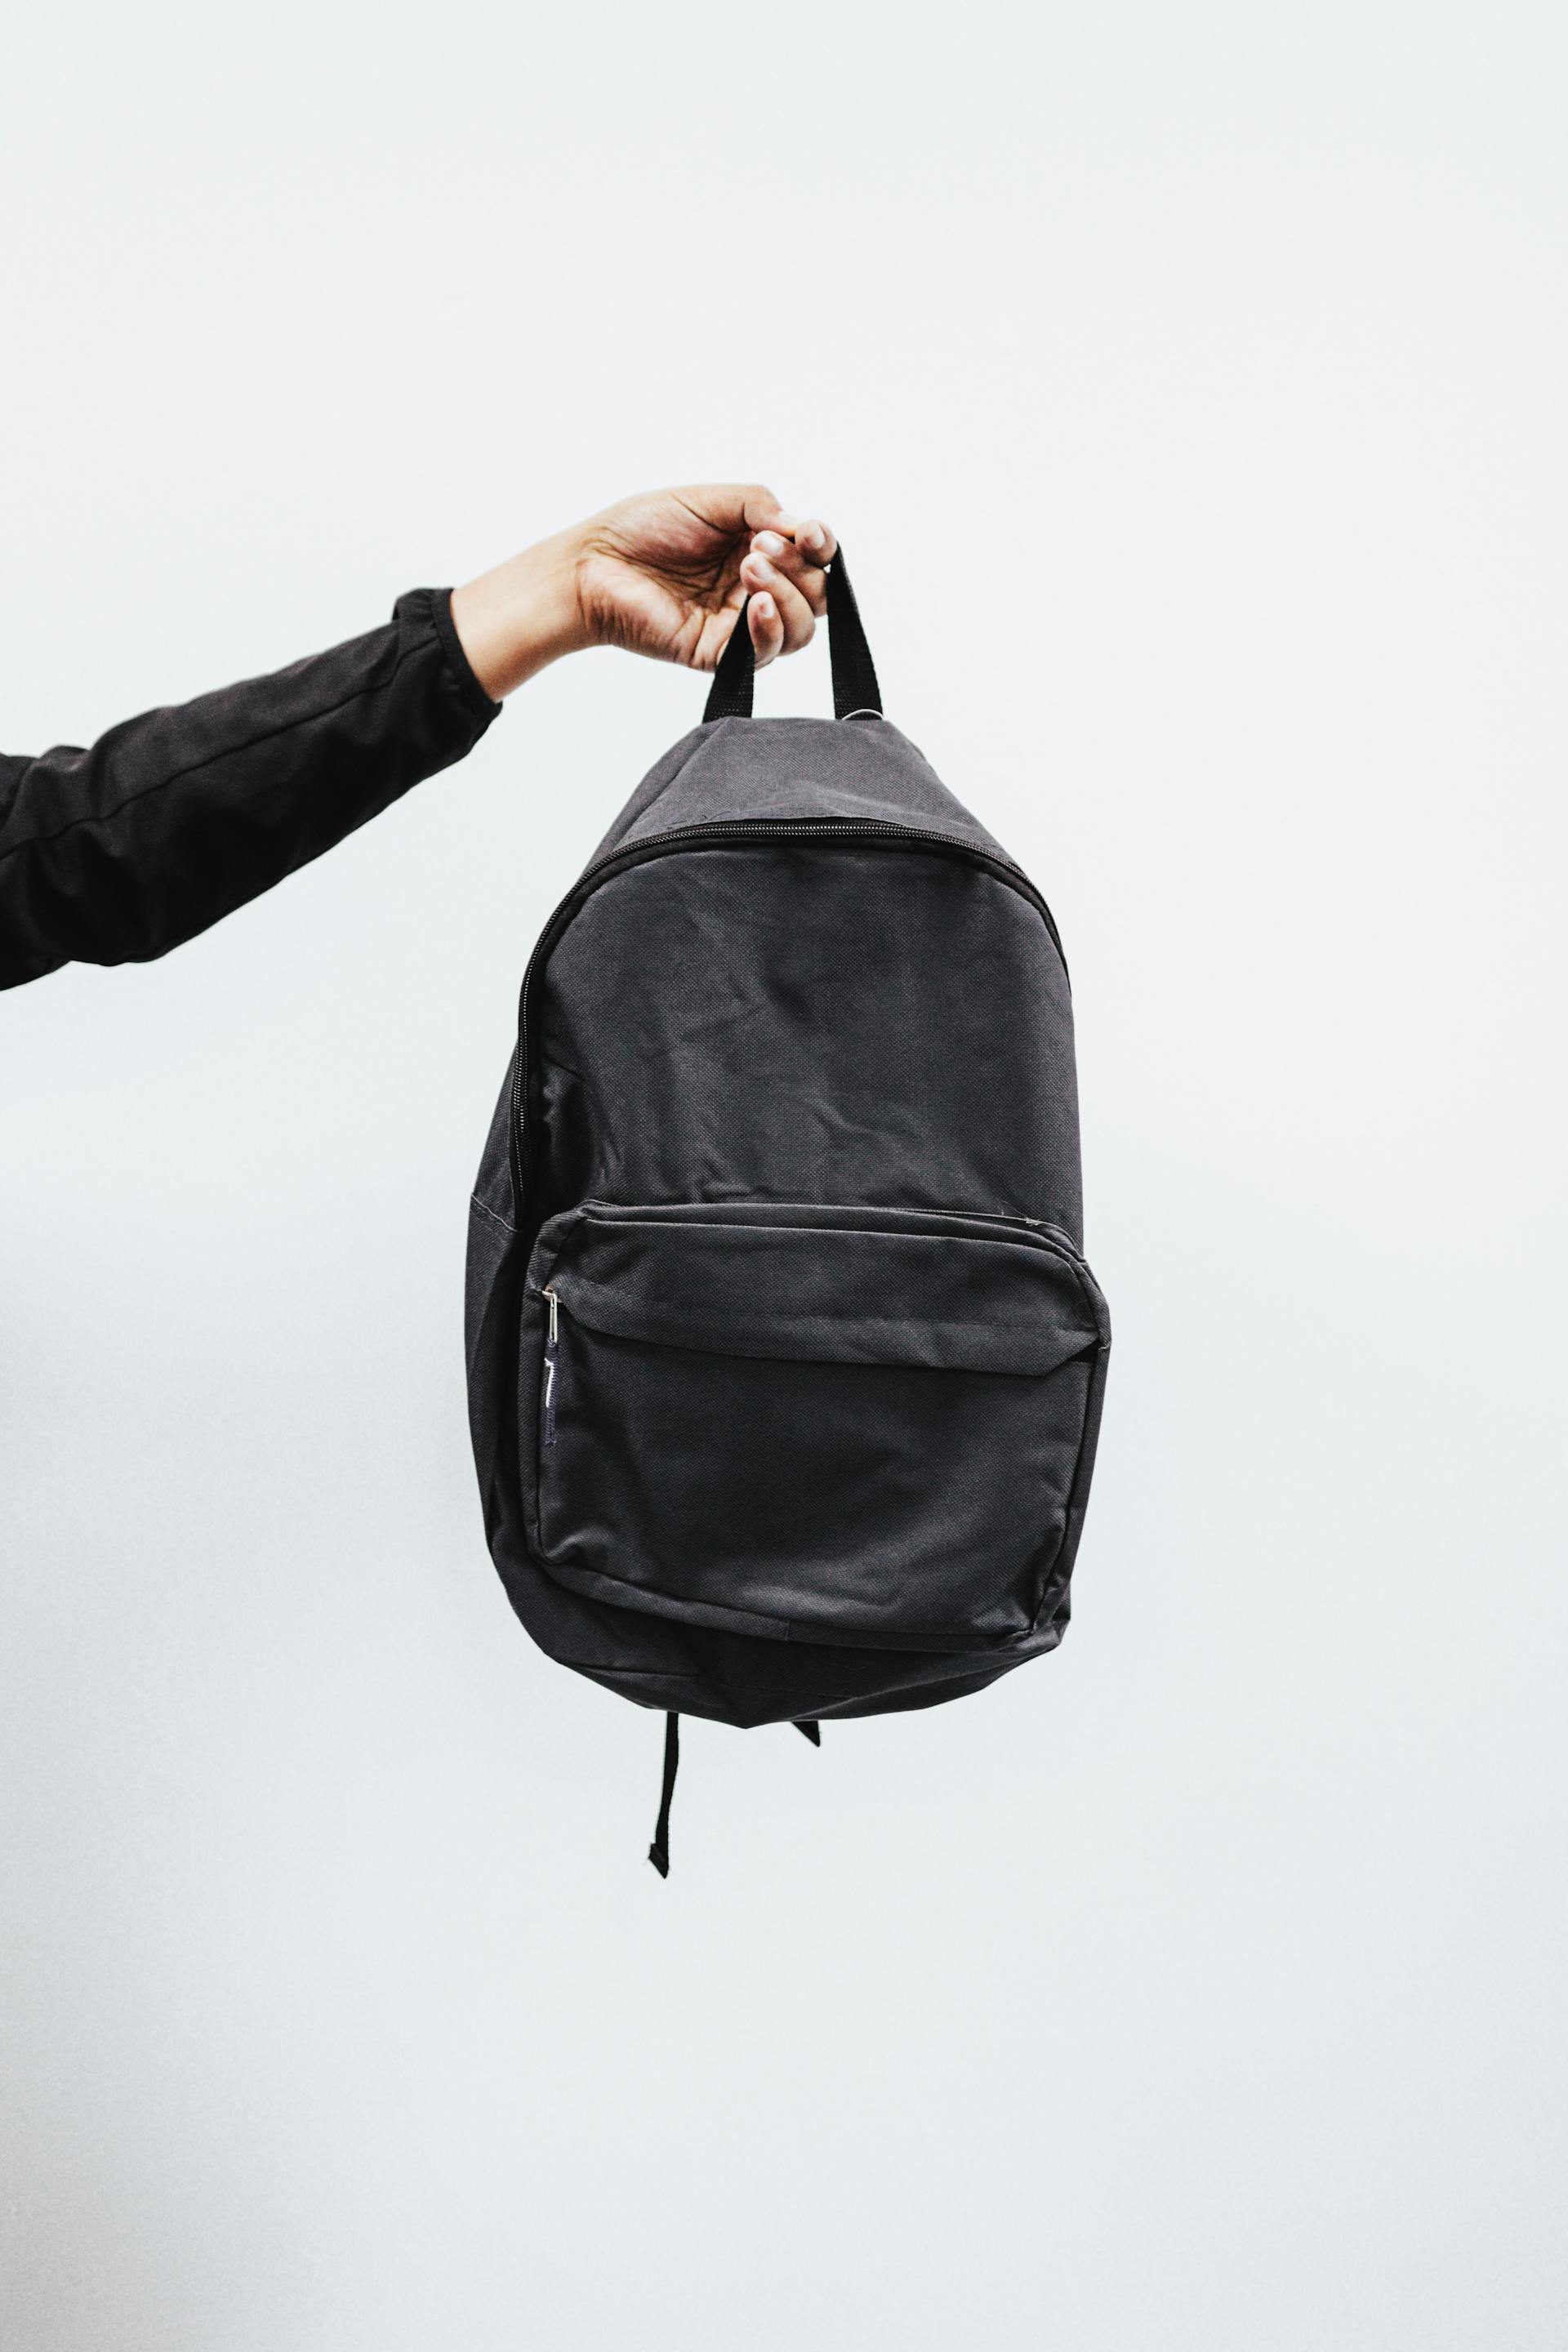 Une personne tenant un sac à dos noir | Source : Pexels